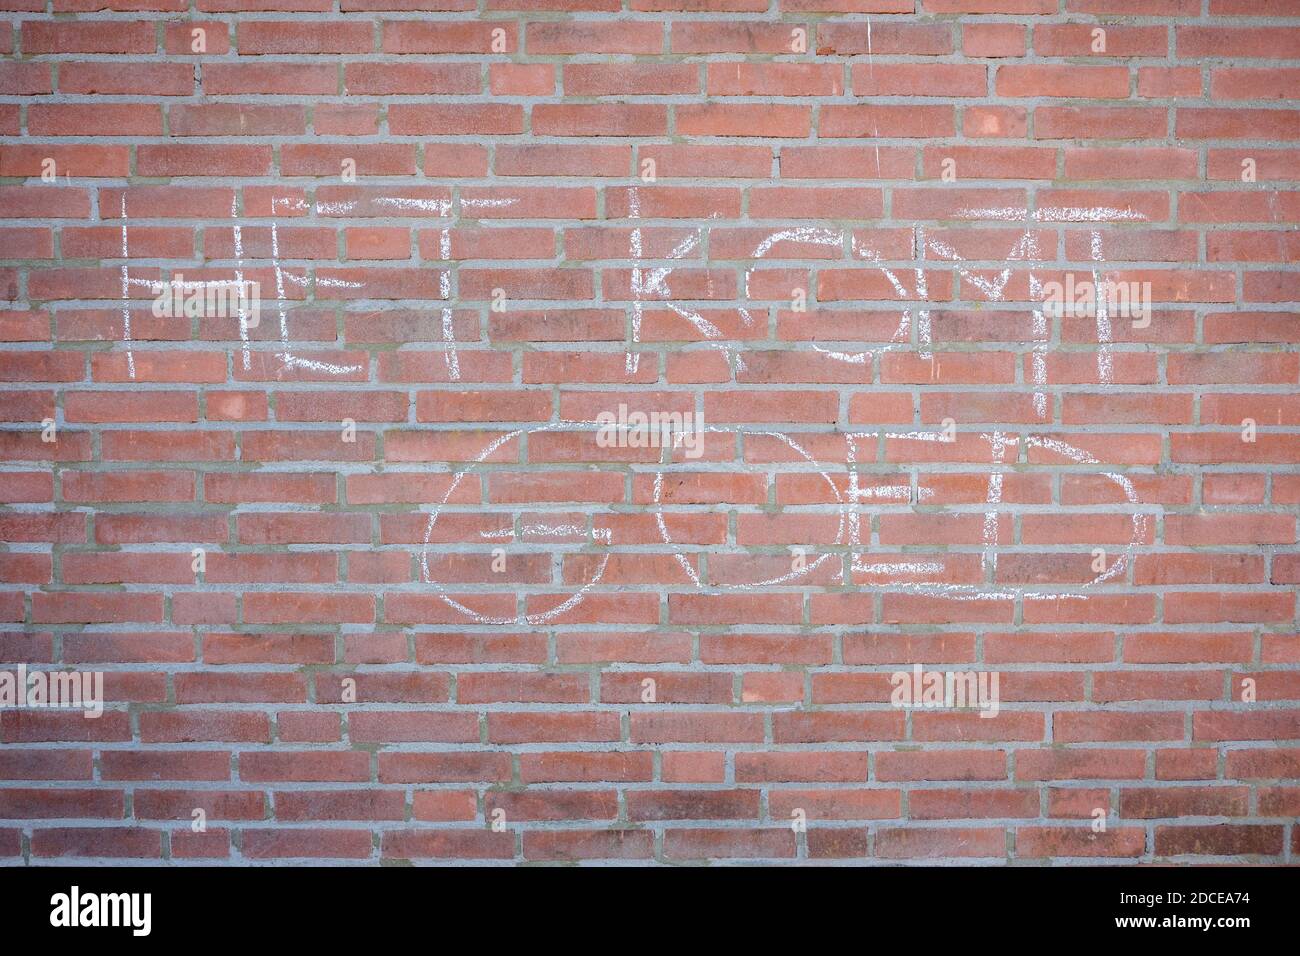 Messaggio di speranza su un muro di mattoni durante la pandemia di Coronavirus. Significa "tutto andrà bene" Foto Stock